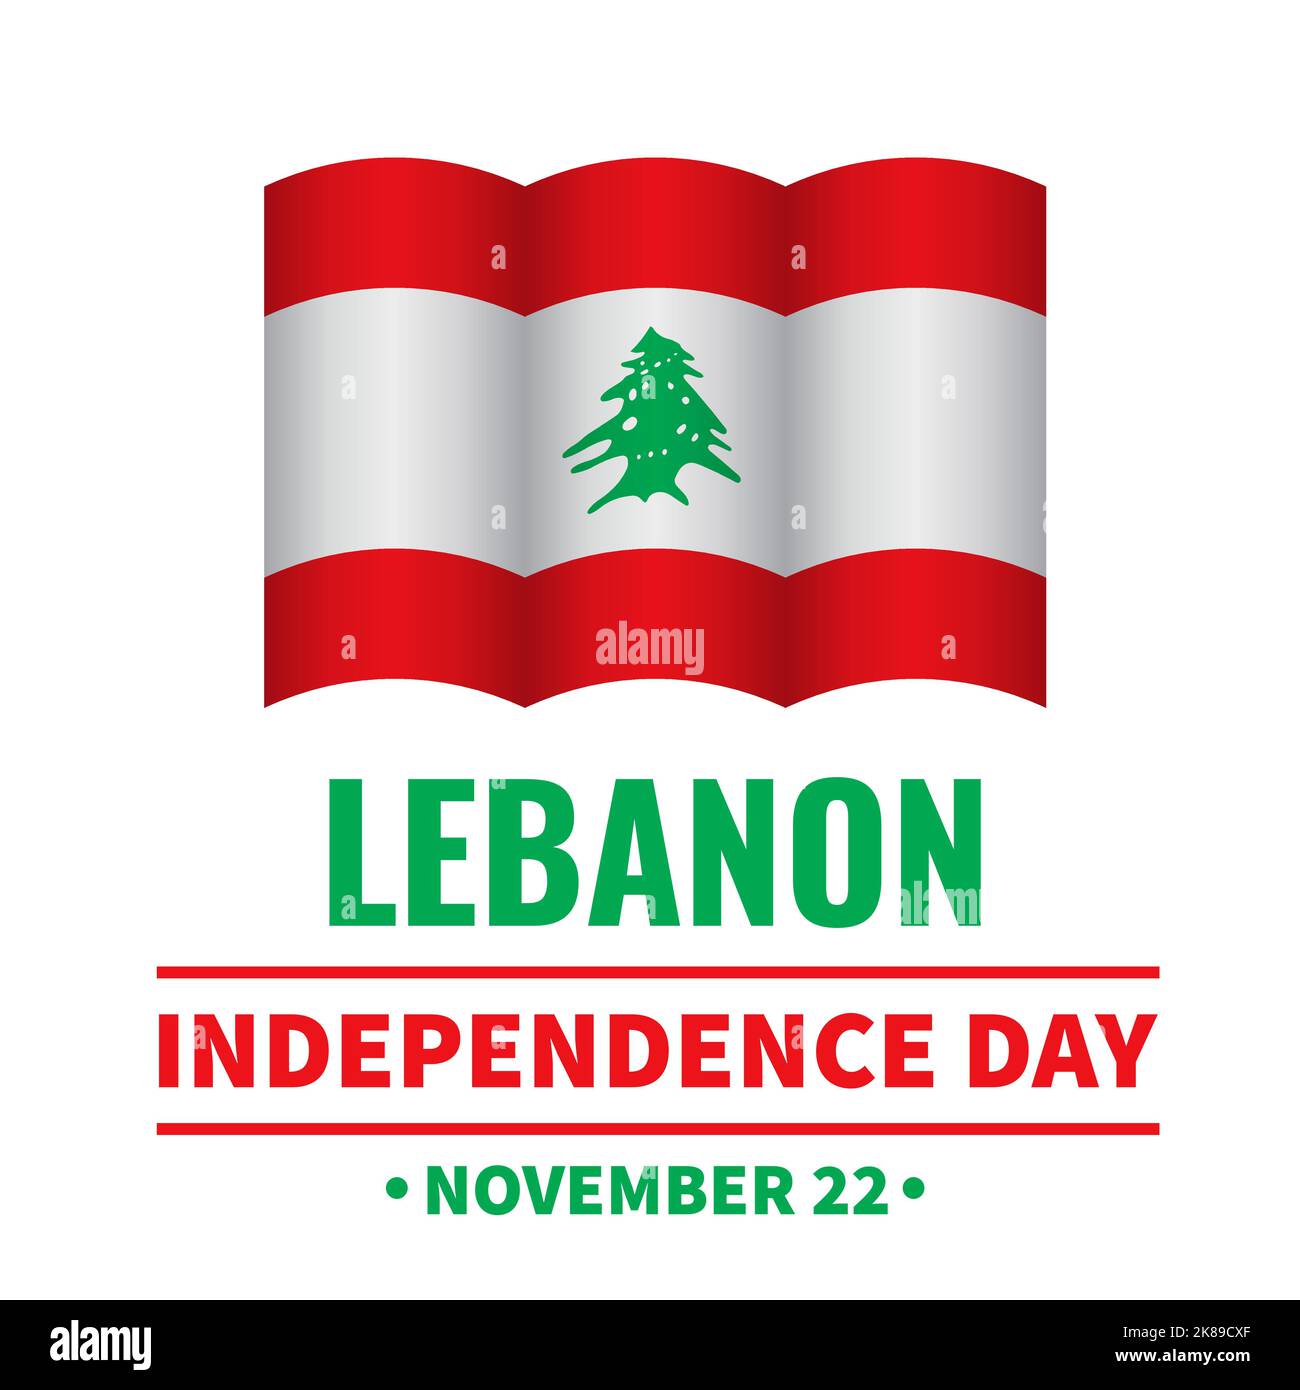 Affiche typographique de la Journée de l'indépendance du Liban. Fête libanaise célébrez 22 novembre. Modèle vectoriel pour bannière, prospectus, cartes postales, etc Illustration de Vecteur